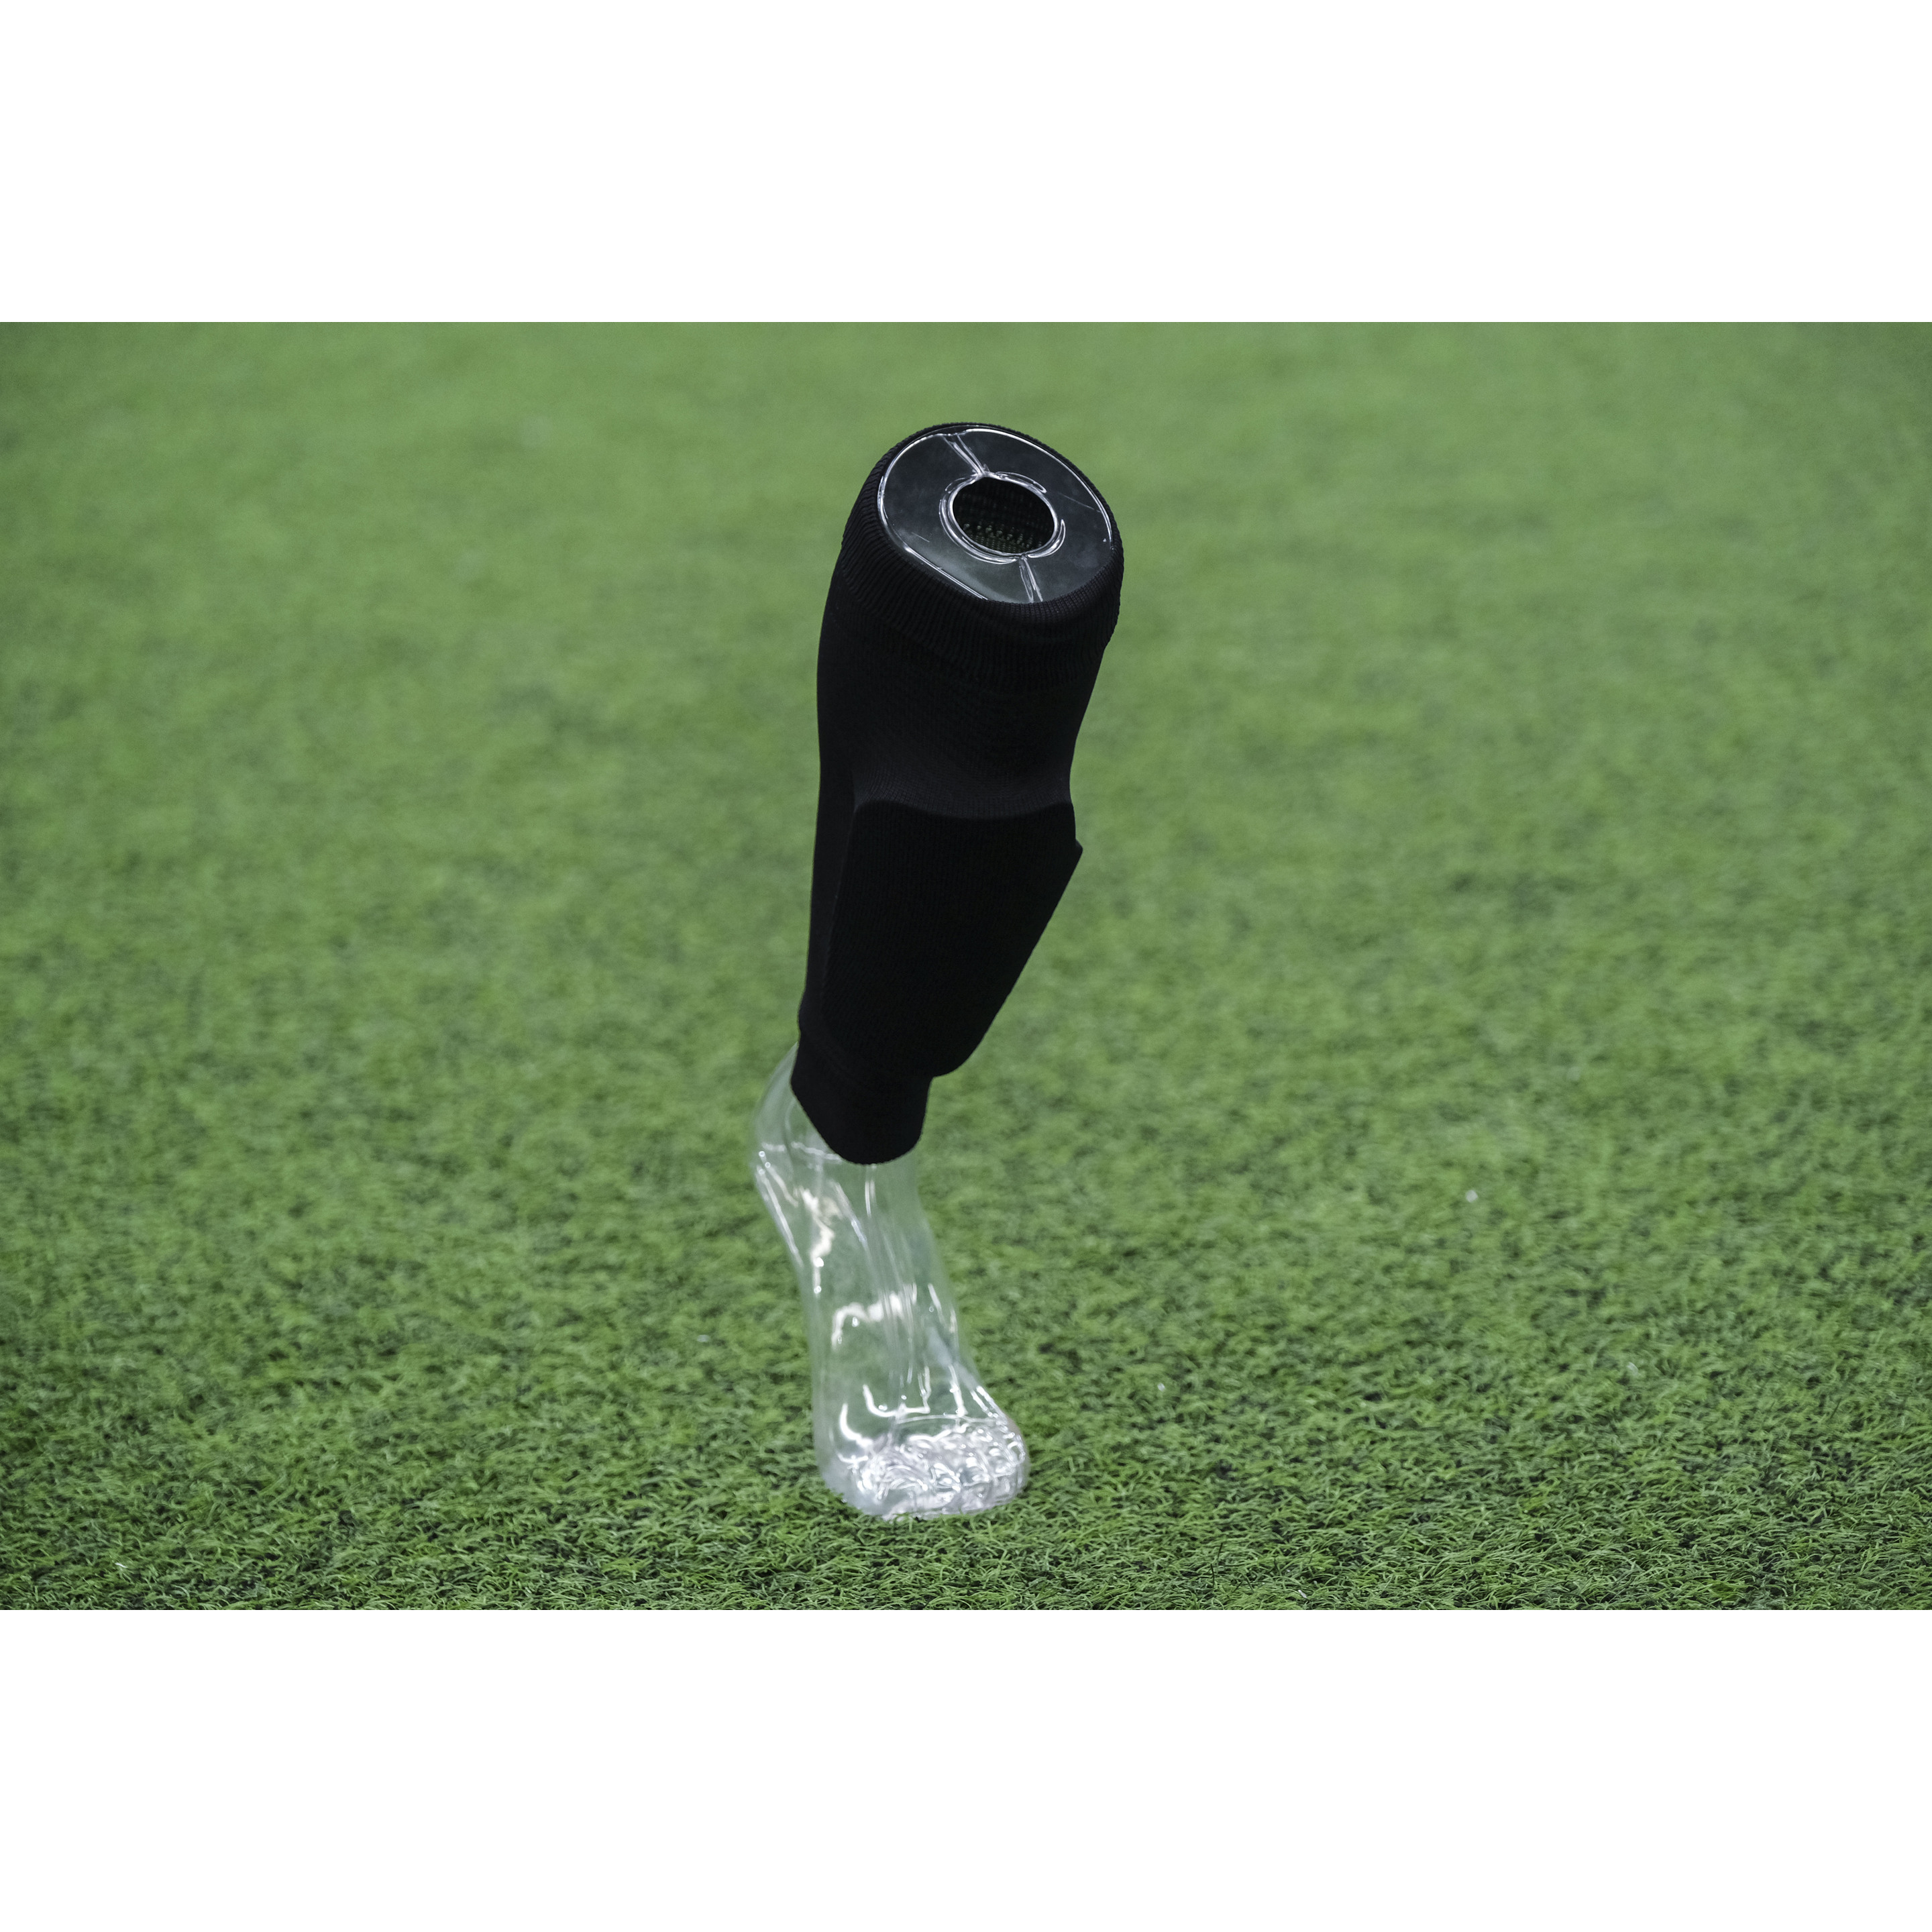 Calcetines Sockapro De Futbol Footless - Negro - Fijación patentada de espinilleras  MKP